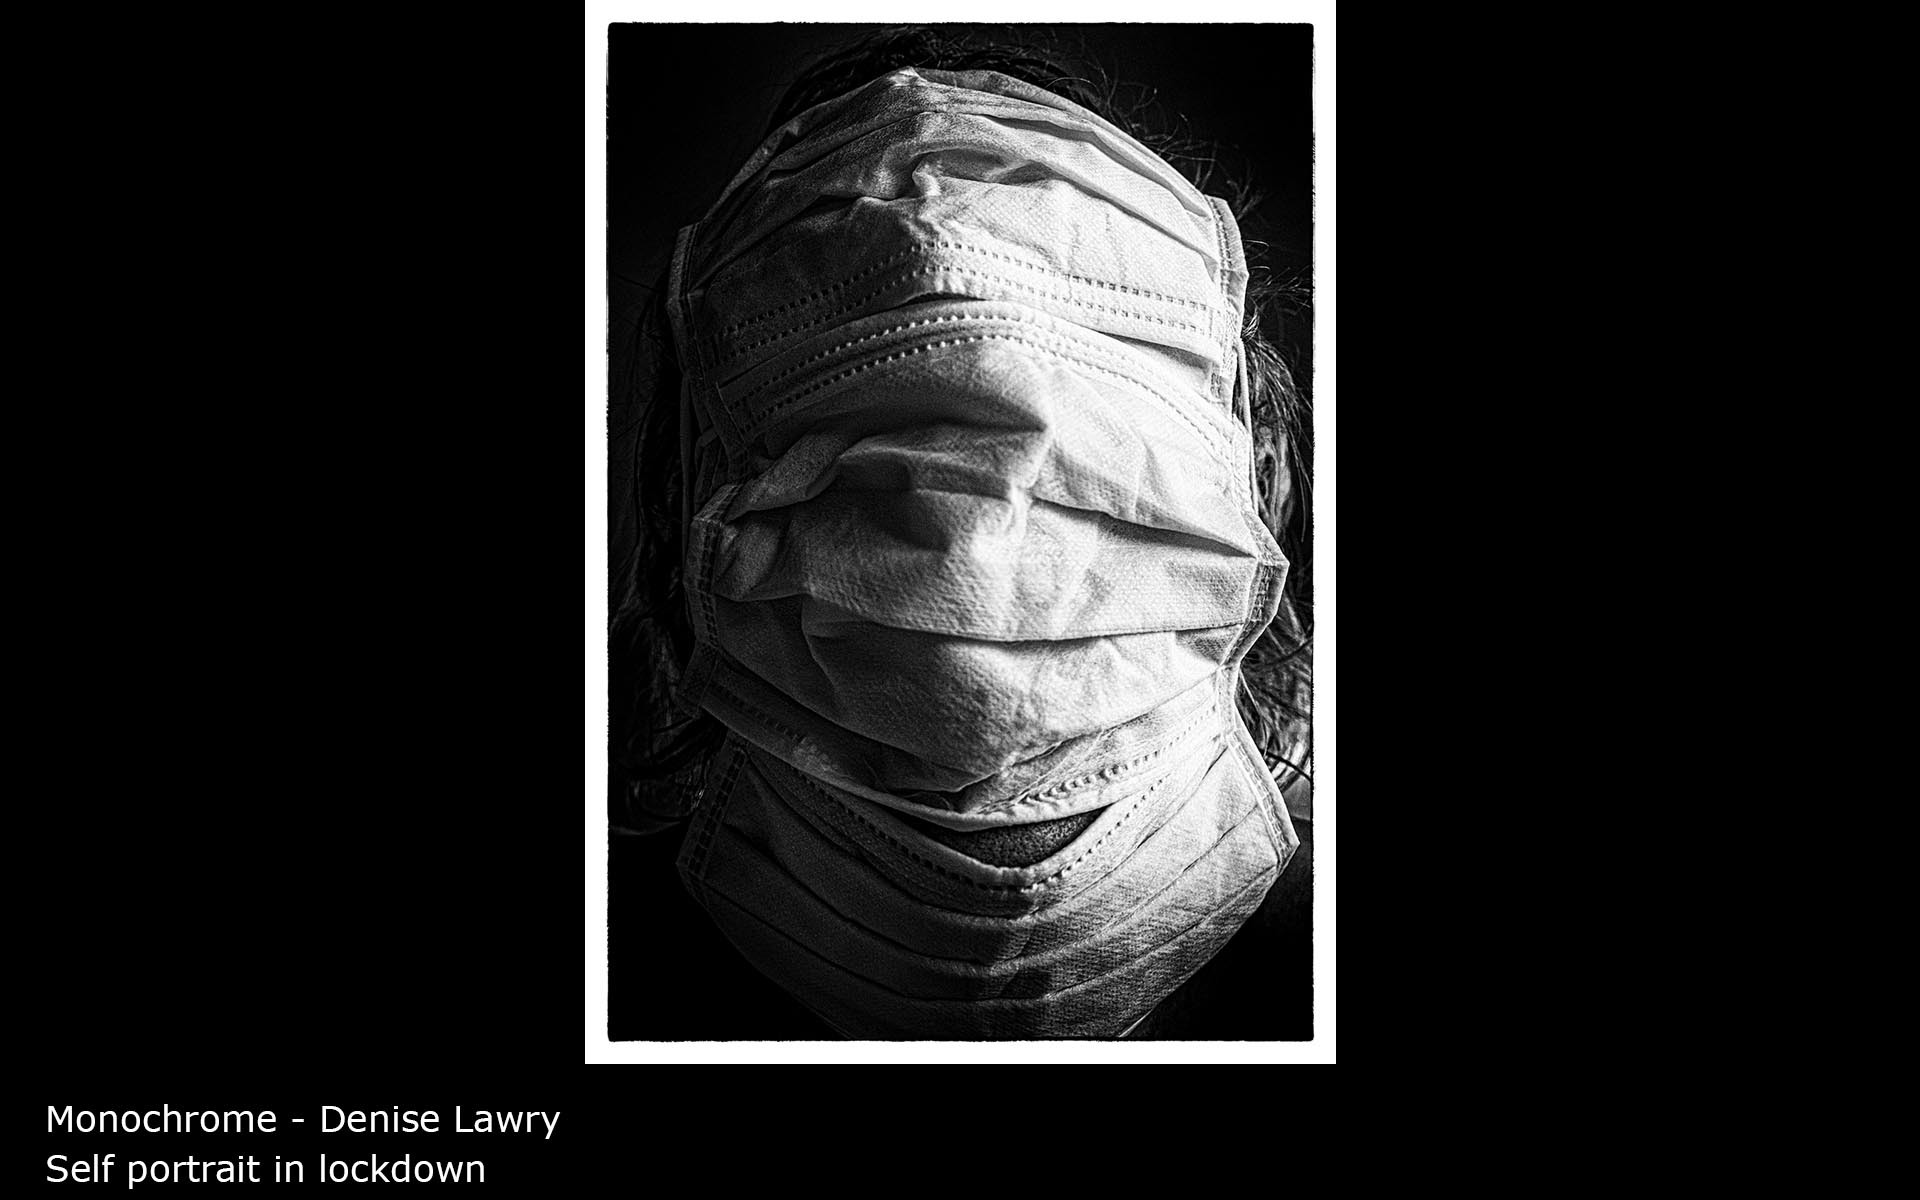 Self portrait in lockdown - Denise Lawry